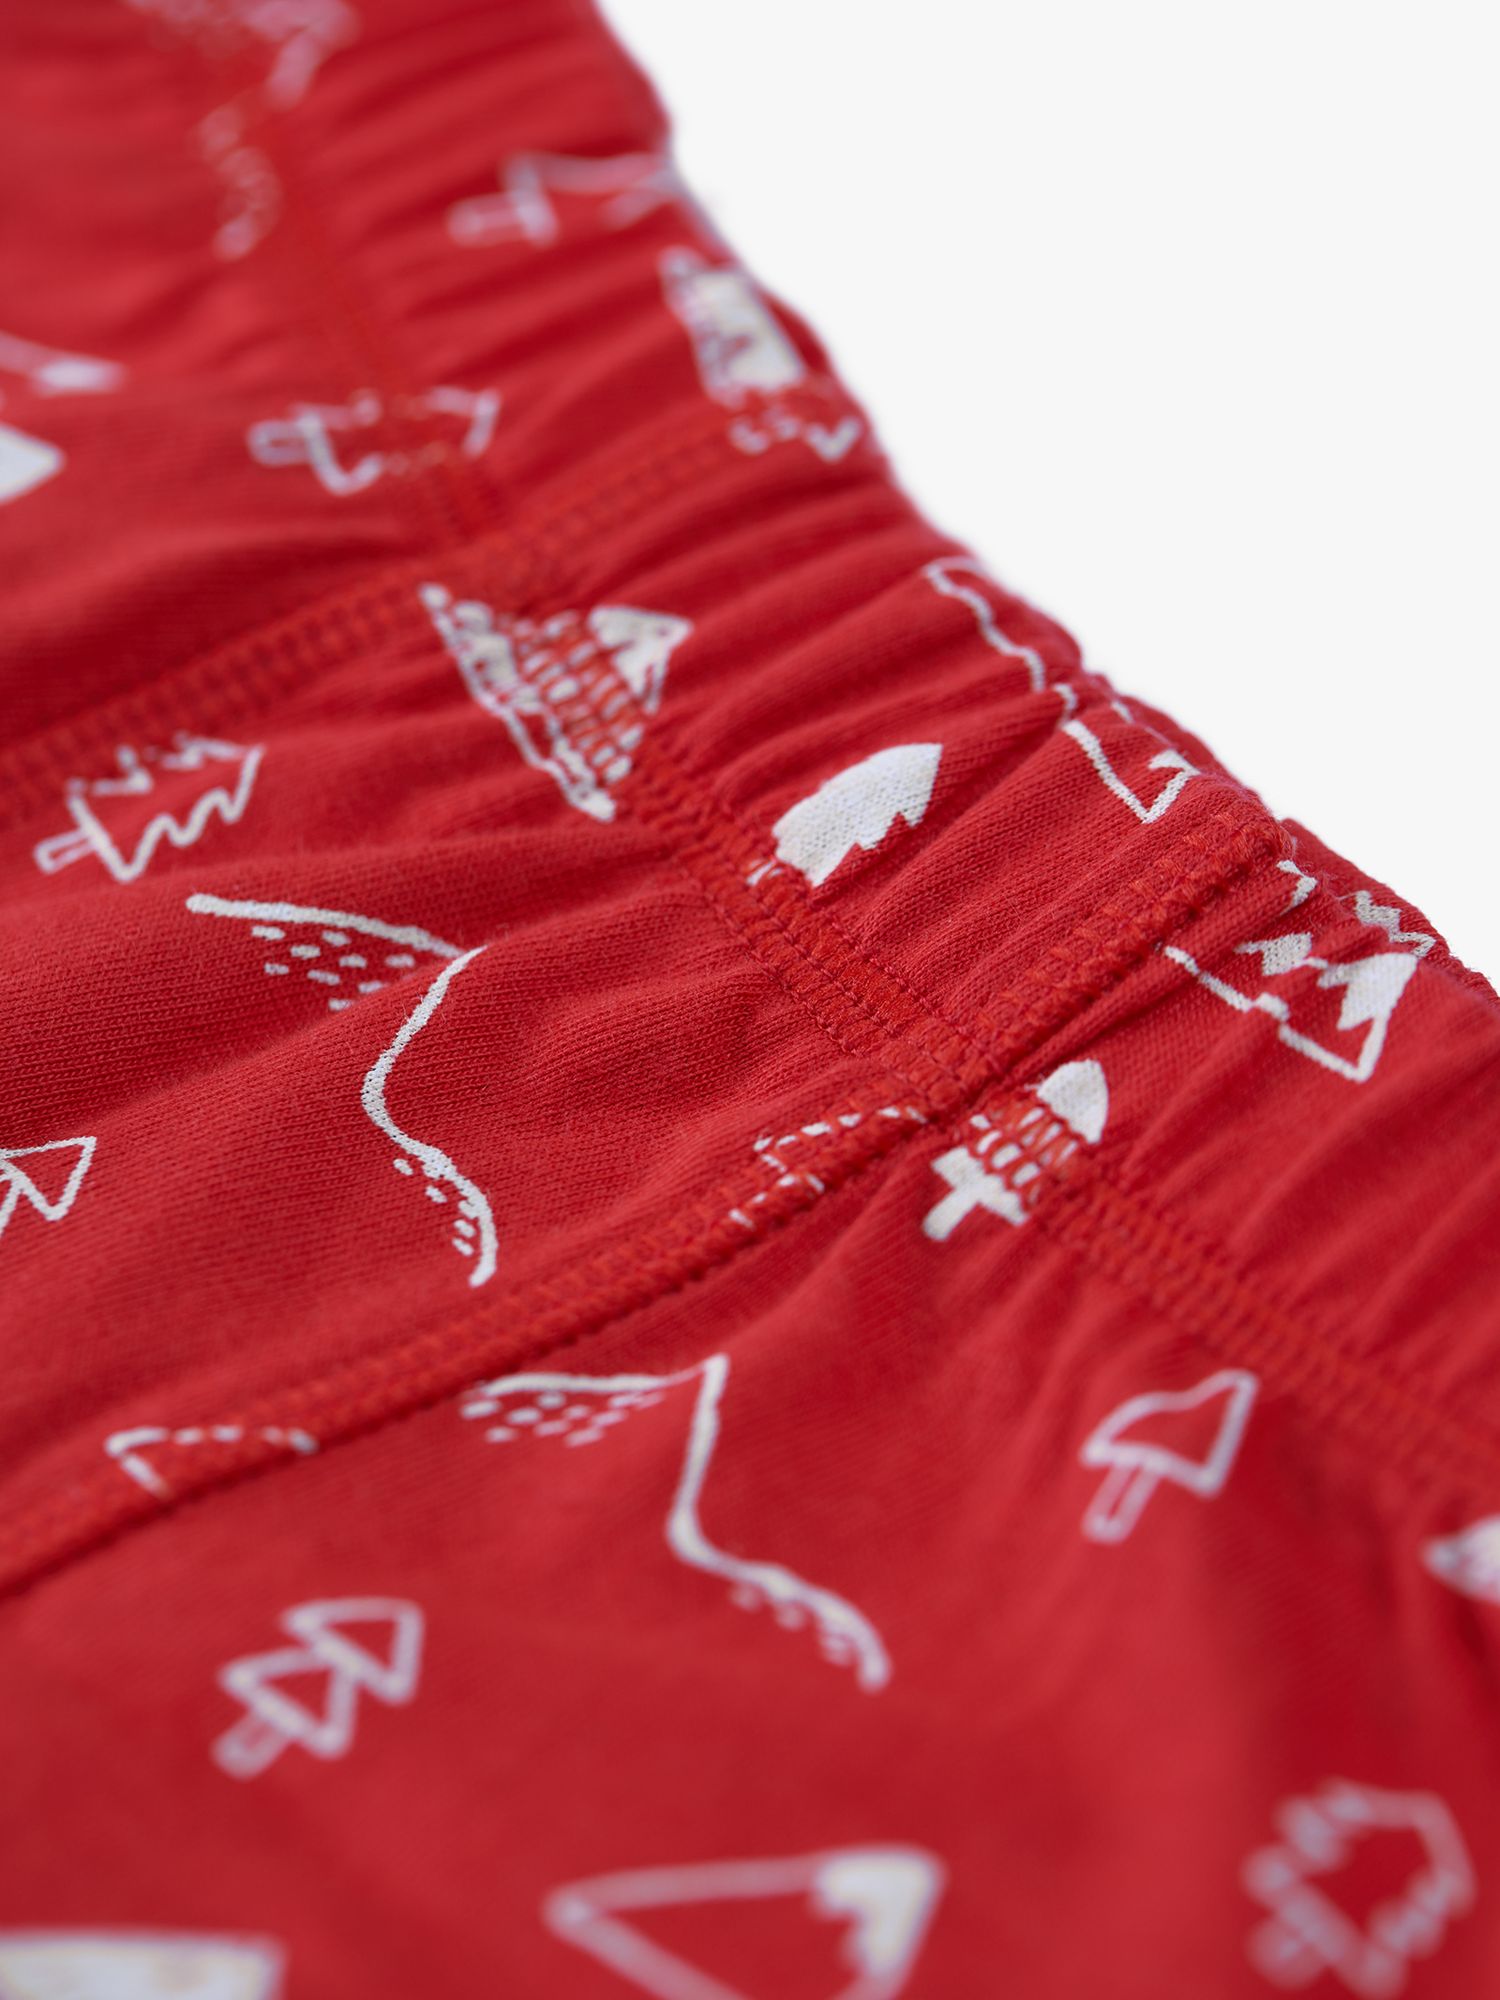 Buy Frugi Kids' Sean Printed Boxer Shorts, Pack of 3, Mountain Multi Online at johnlewis.com